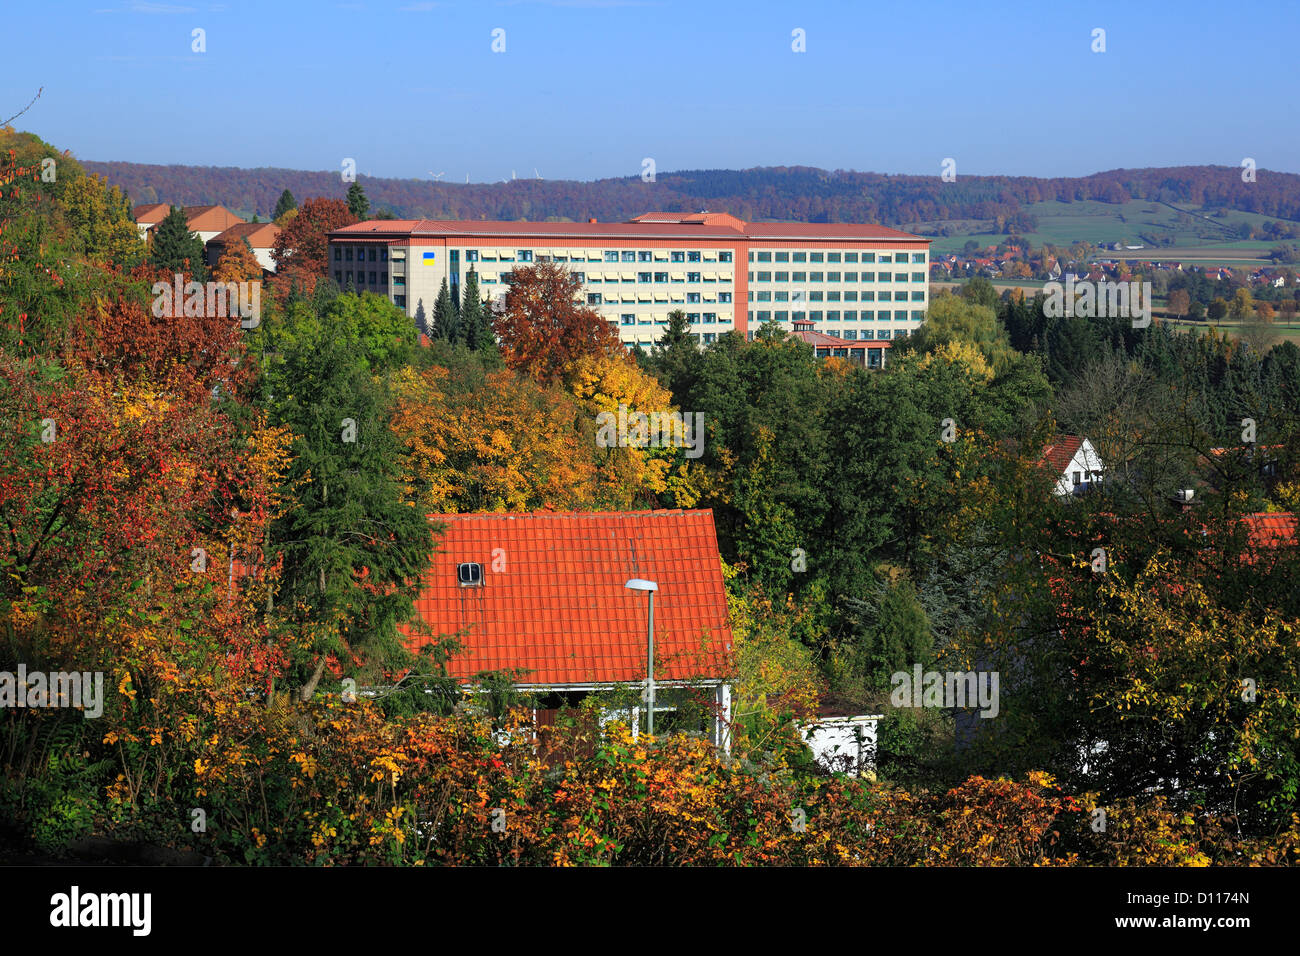 Reha-Klinik Rosenberg in Bad Driburg, Teutoburger Wald, Eggegebirge,  Nordrhein-Westfalen Stock Photo - Alamy